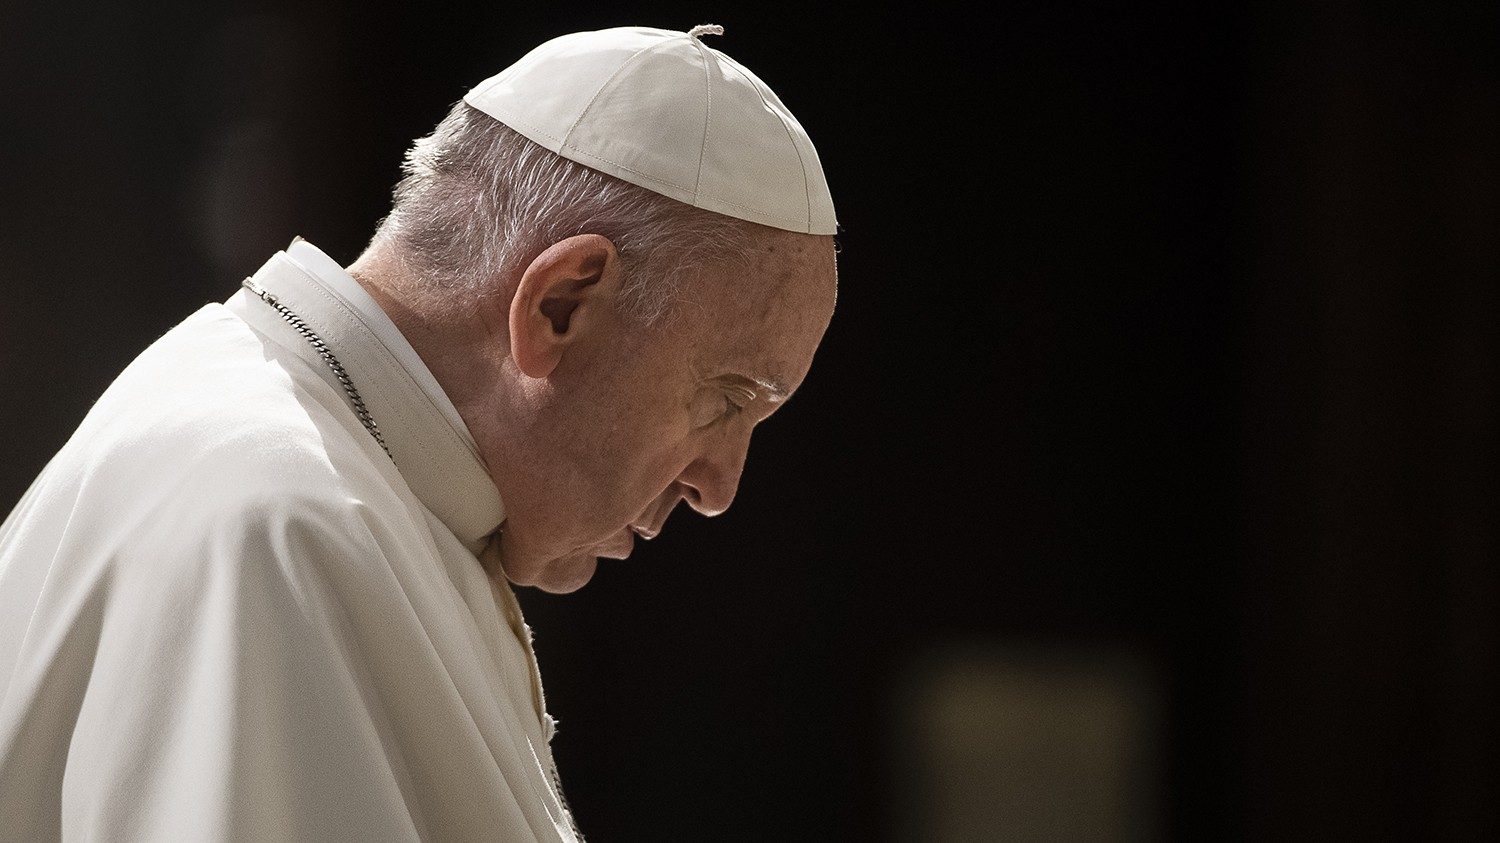 El papa Francisco revela que tiene “bronquitis” y vuelve a pedir que lean su discurso